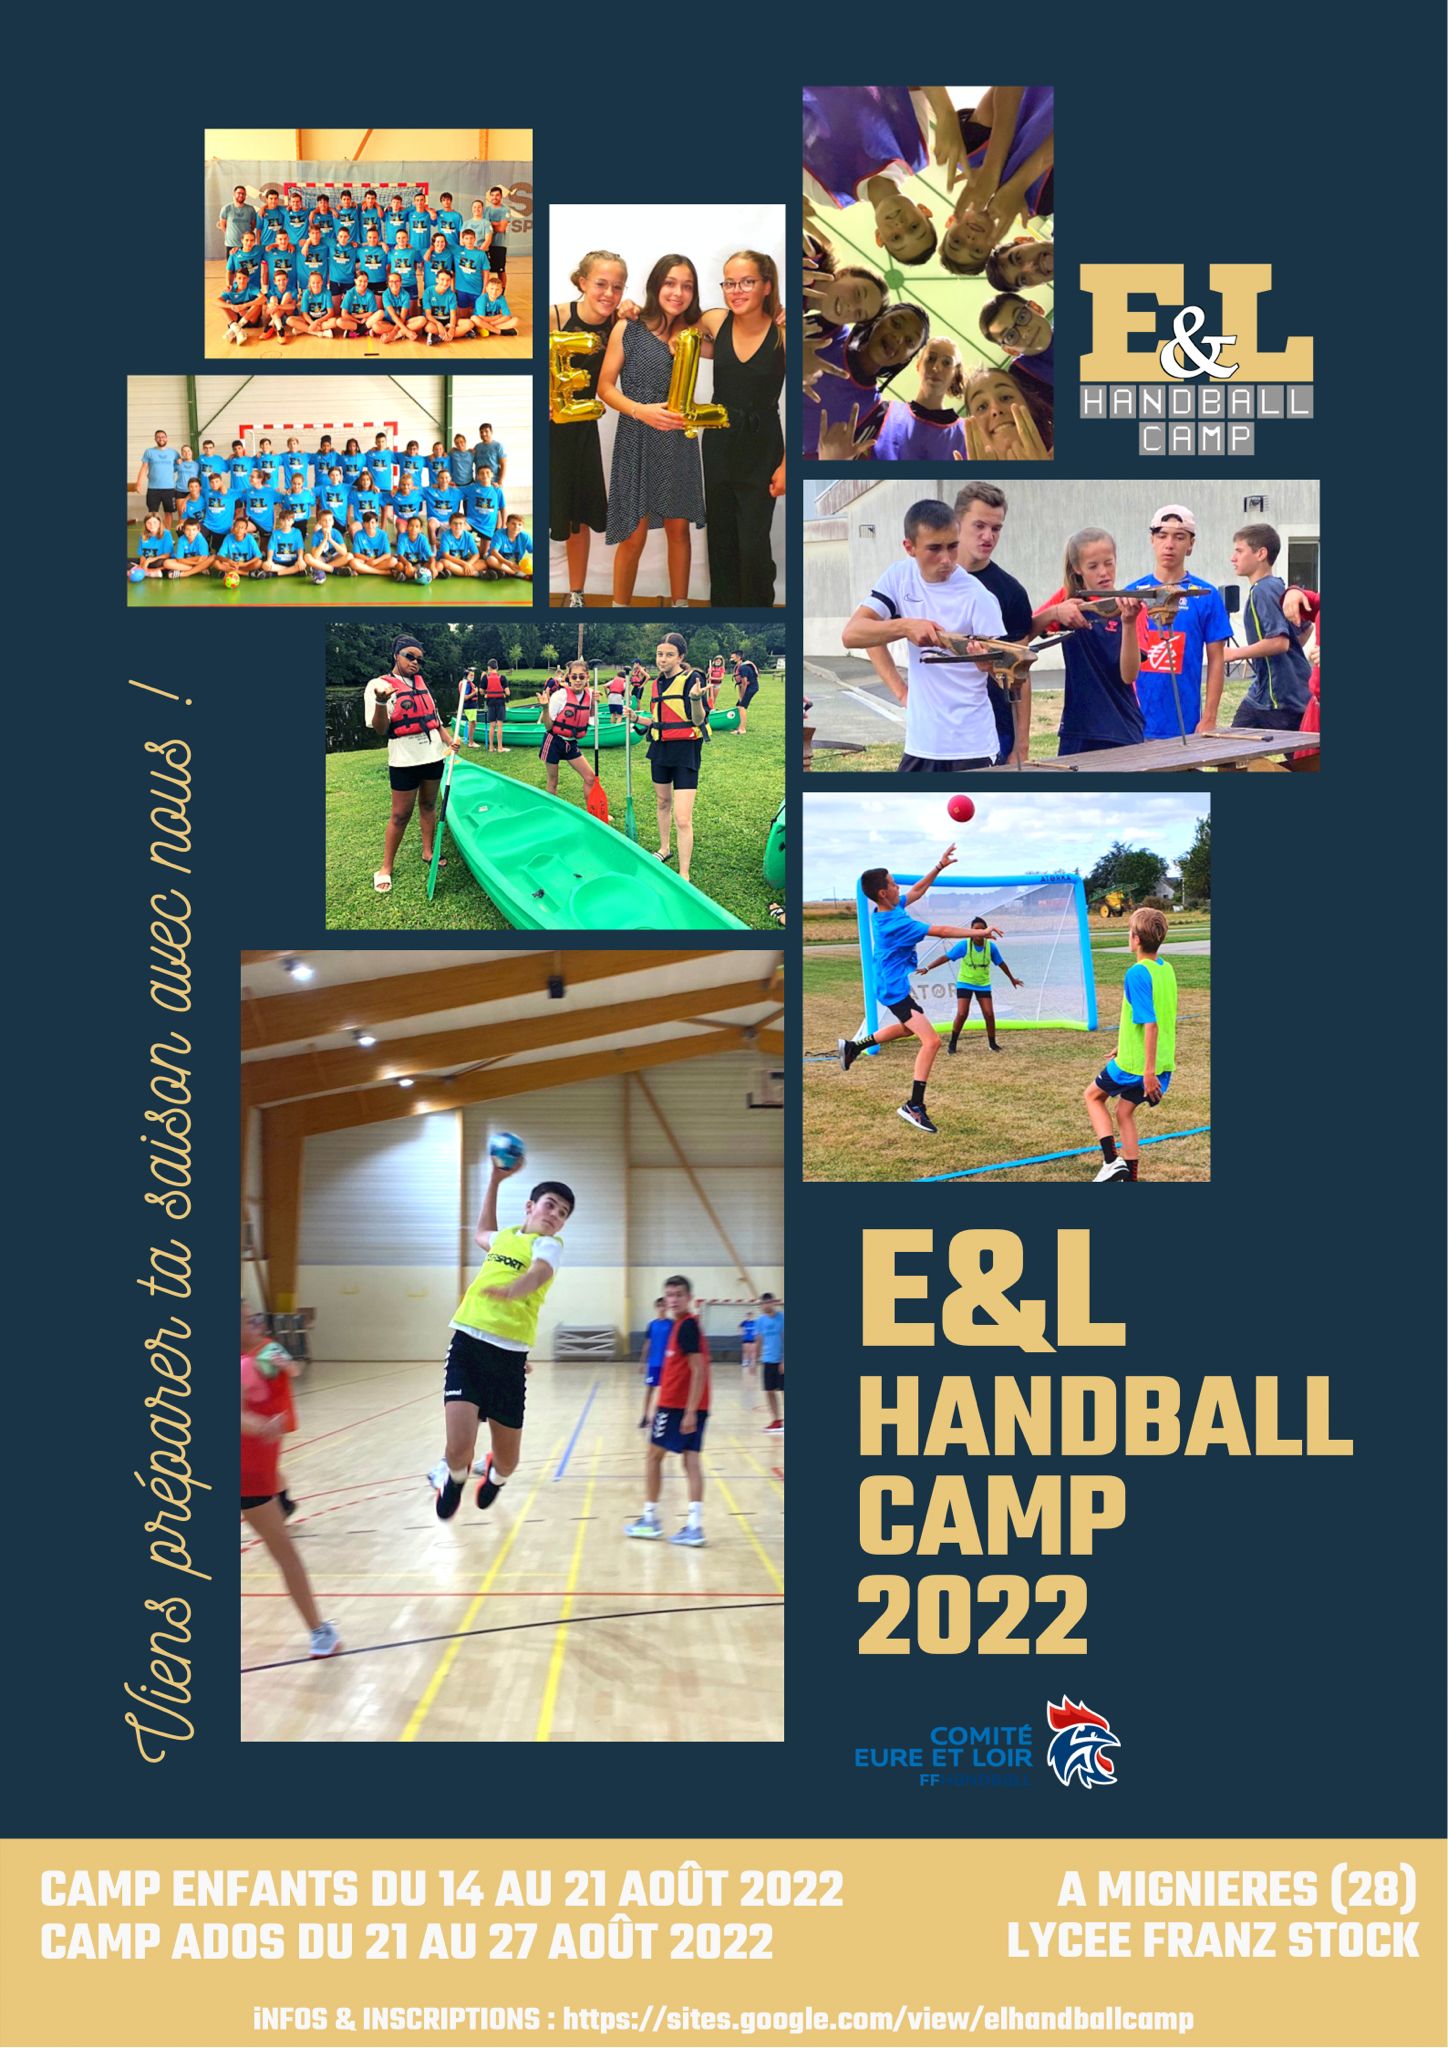 E&L Handball Camp 2022